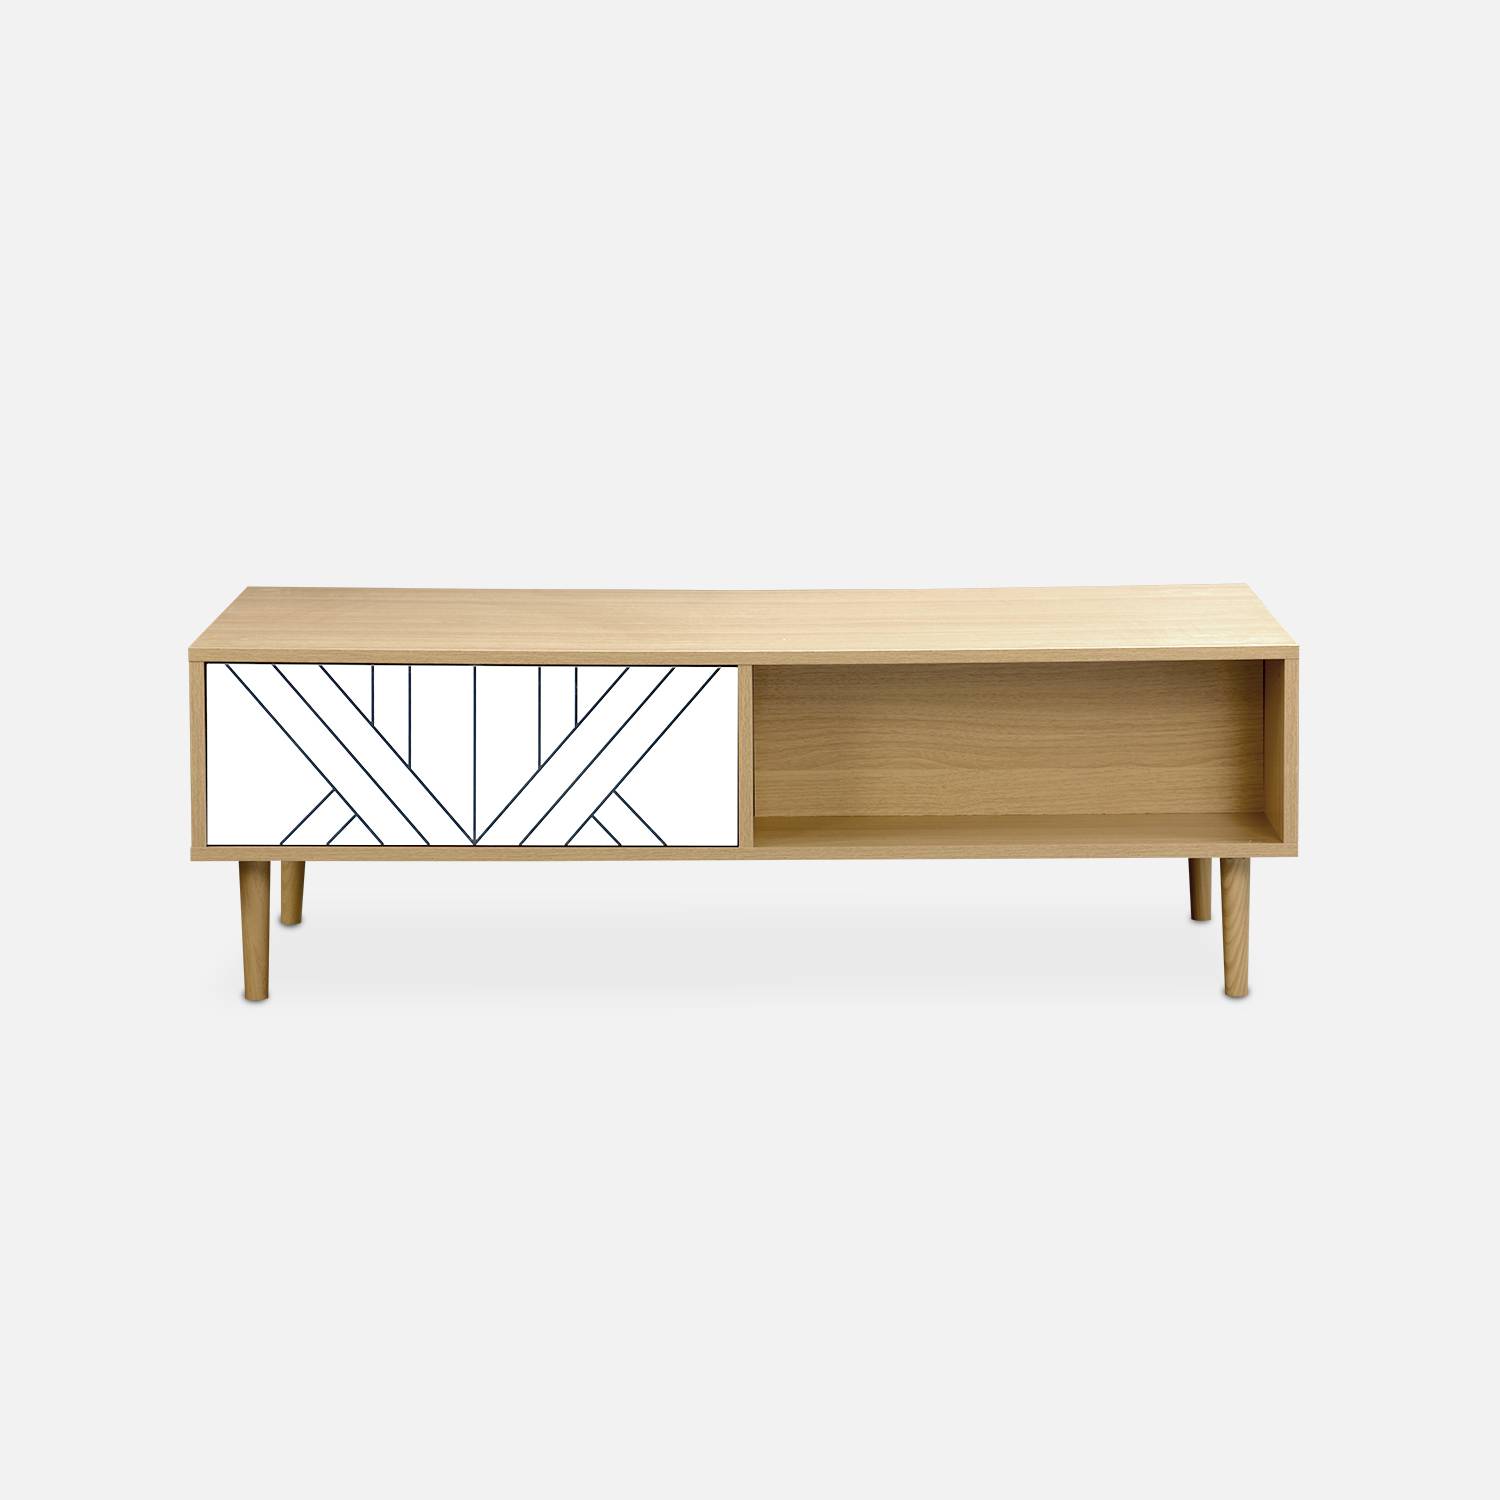 Tavolino in legno e decoro bianco - Mika - 2 cassetti, 2 vani portaoggetti, L 120 x L 55 x H 40cm Photo5